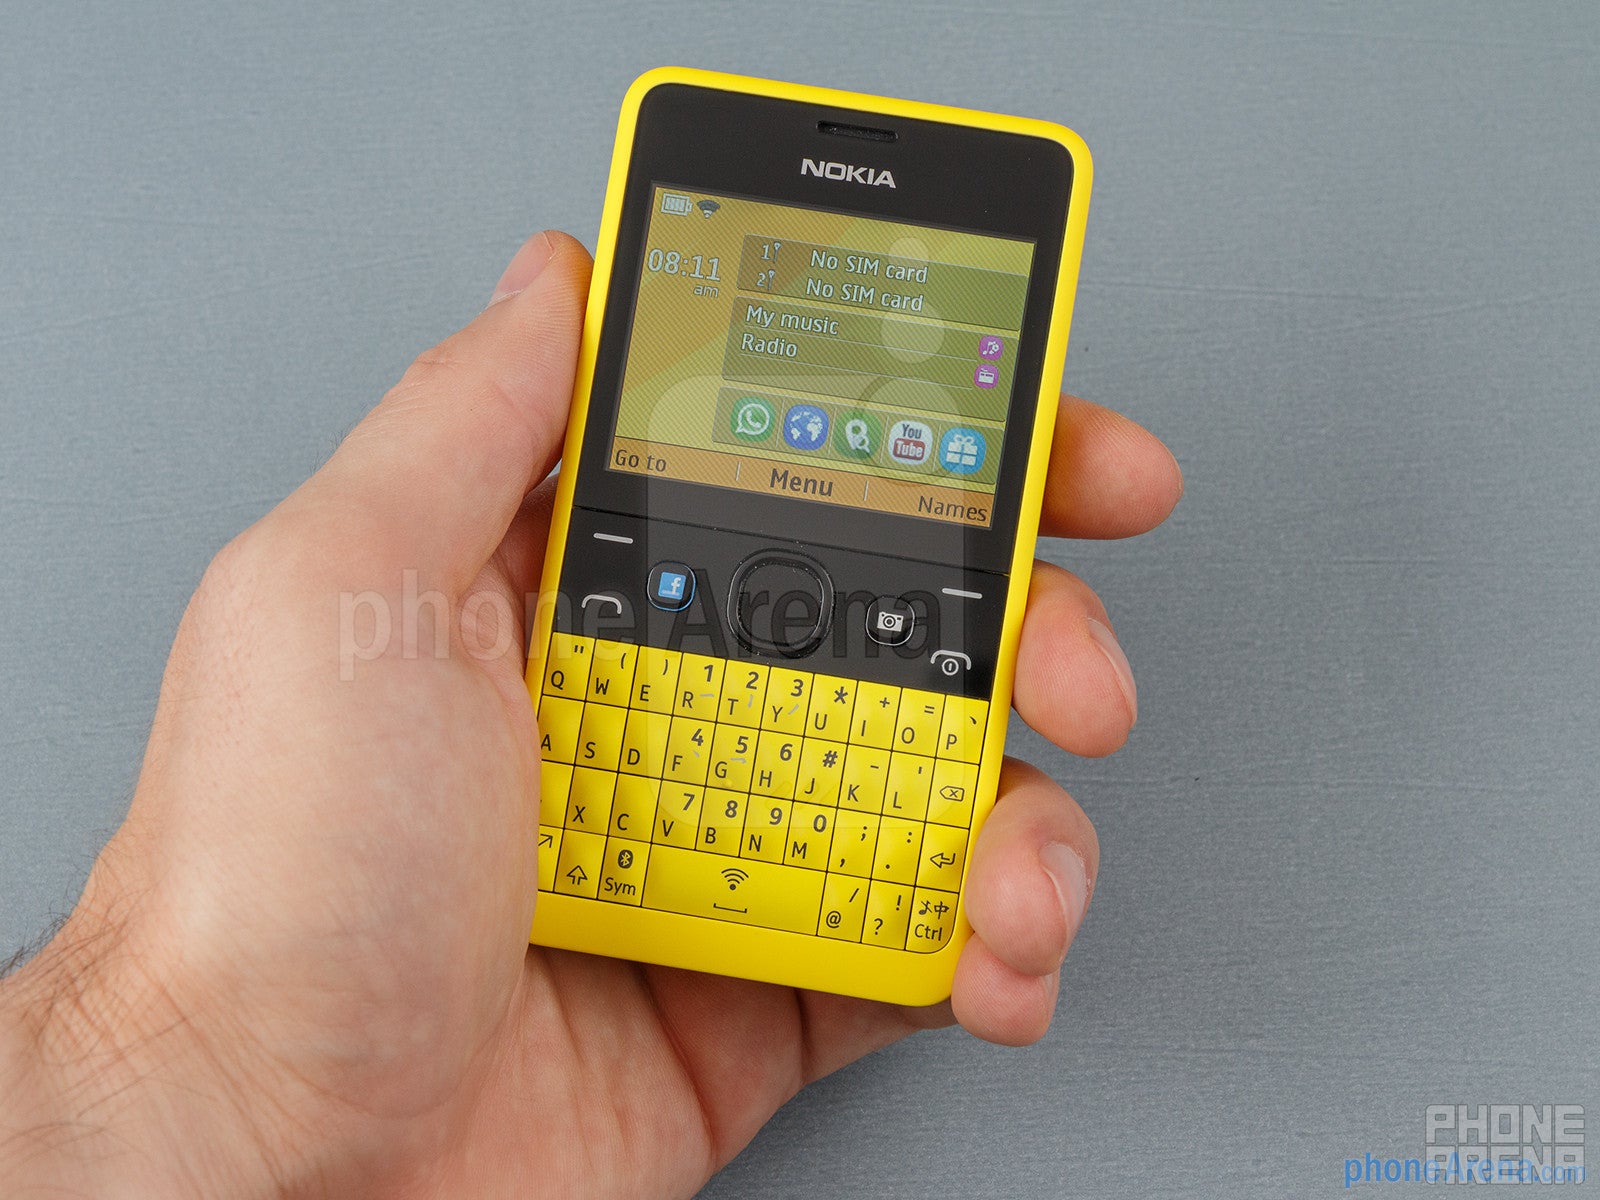 Nokia Asha 210 Dual SIM Review